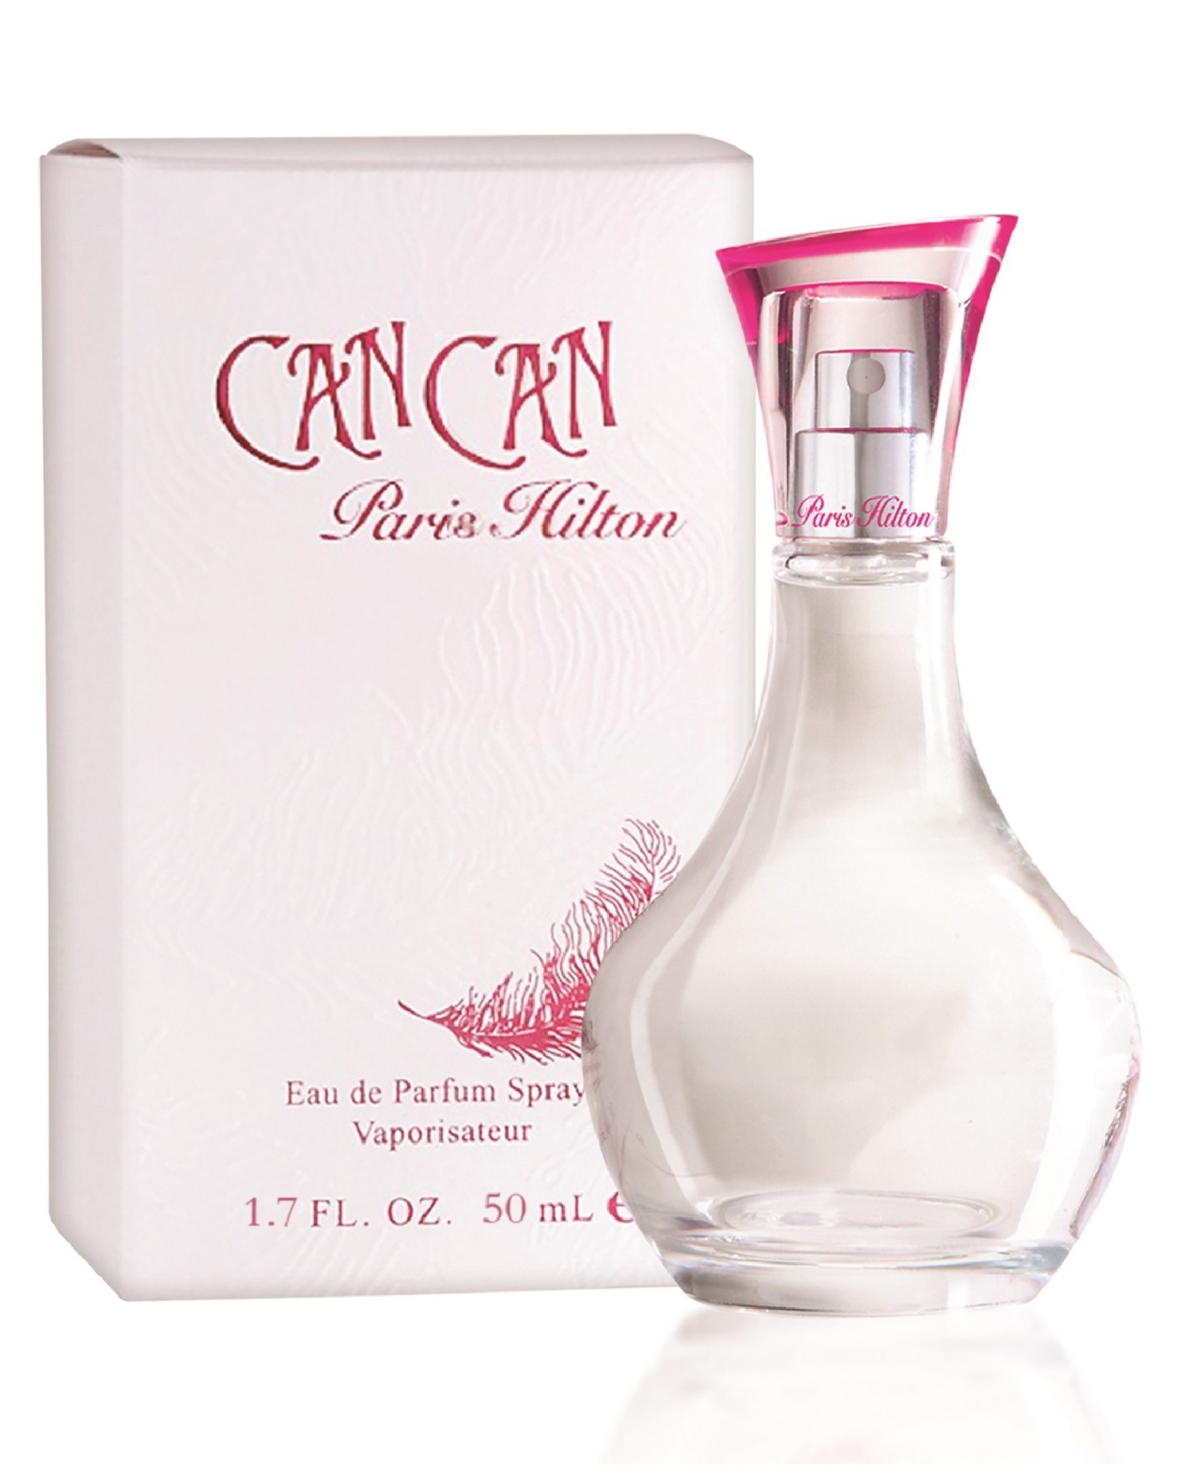 Paris Hilton Women's Can Can Eau De Parfum Spray, 1.7 oz